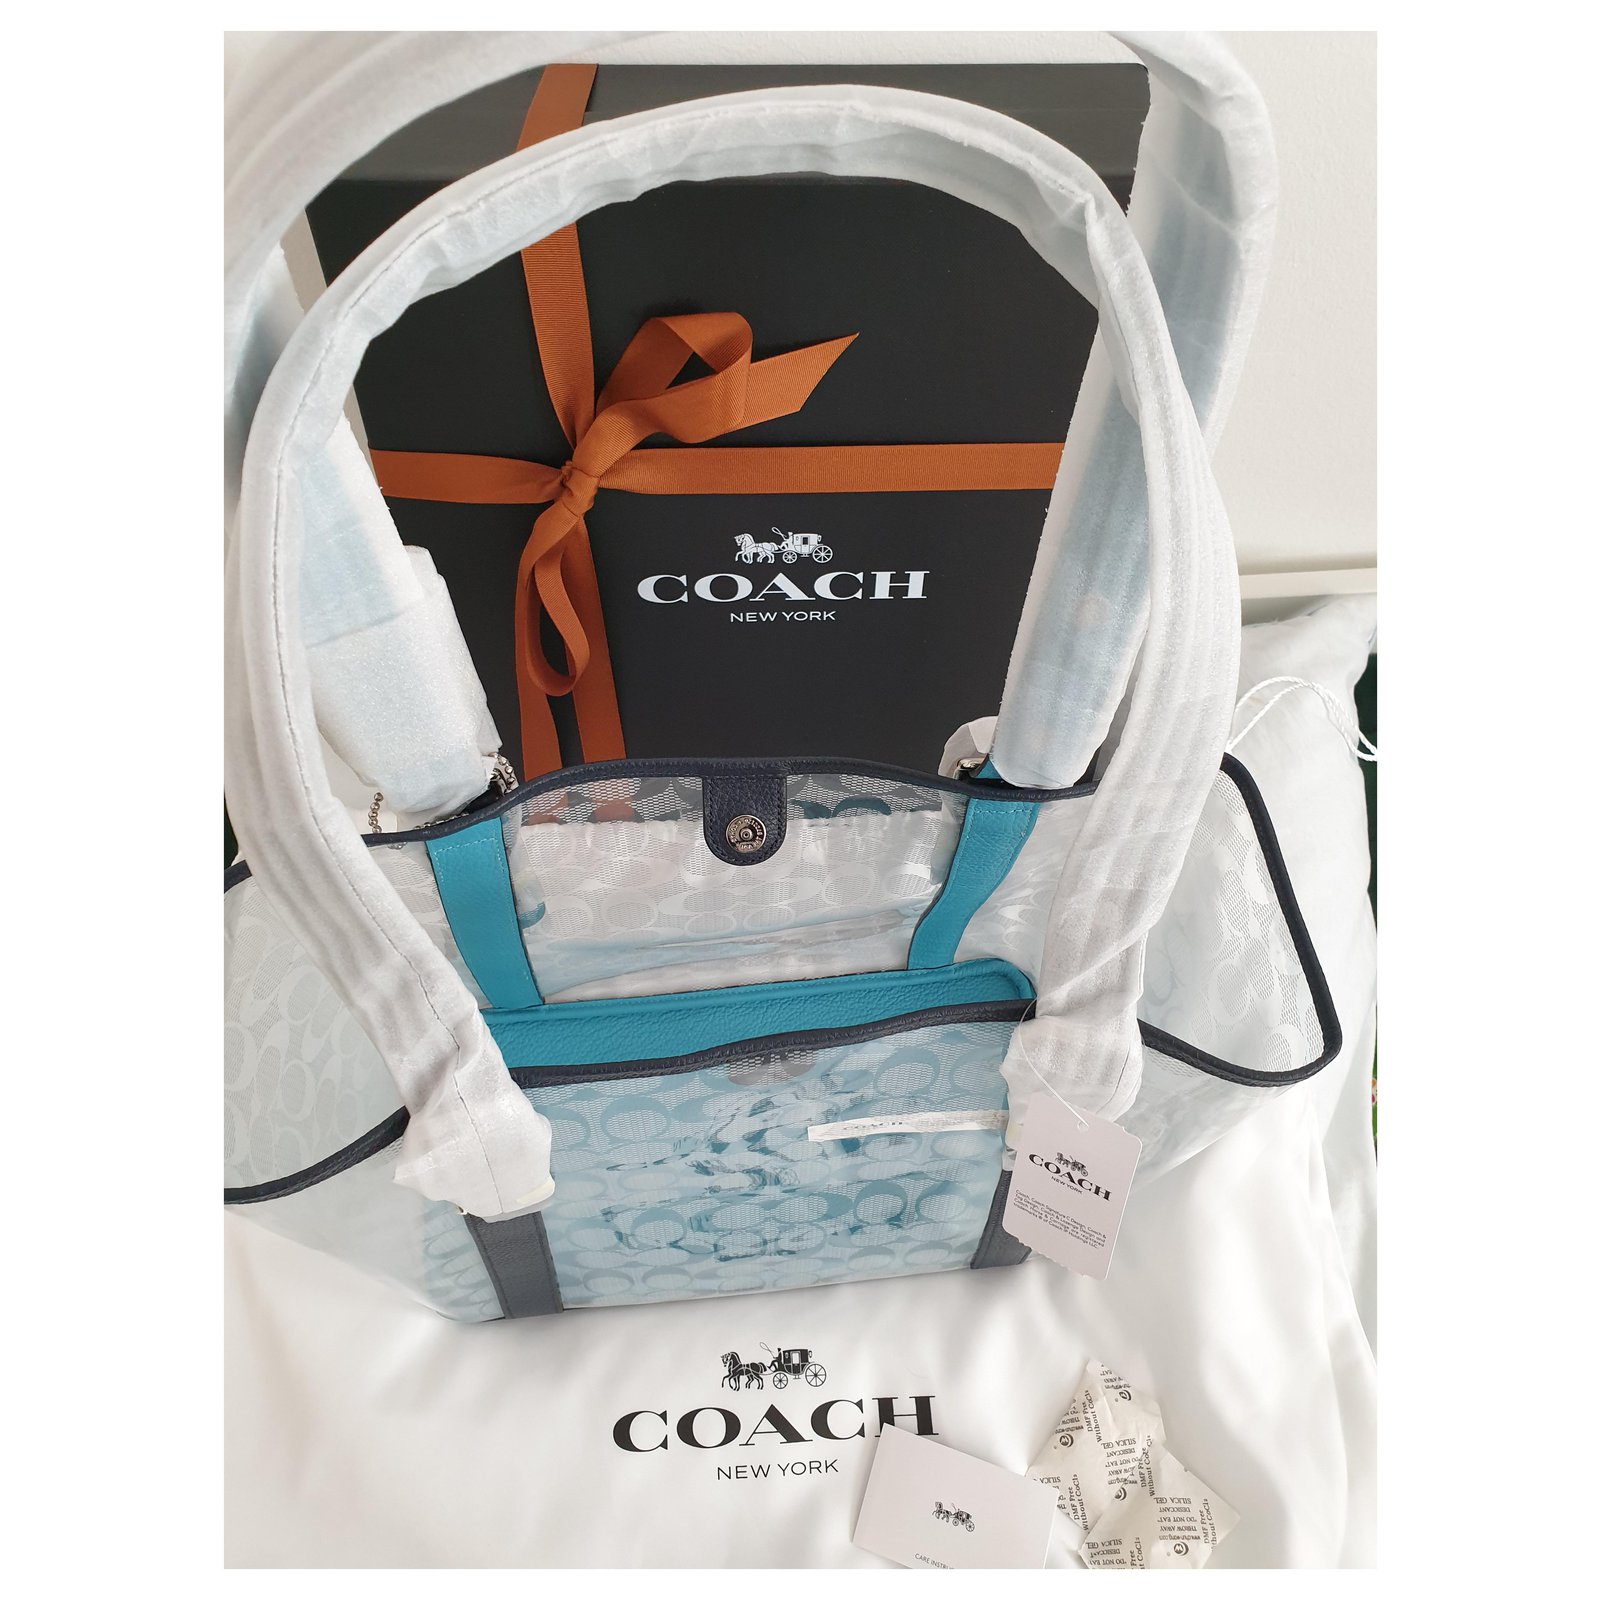 Coach Clear/White/Blue Beach Tote Bag -#16594 NWT